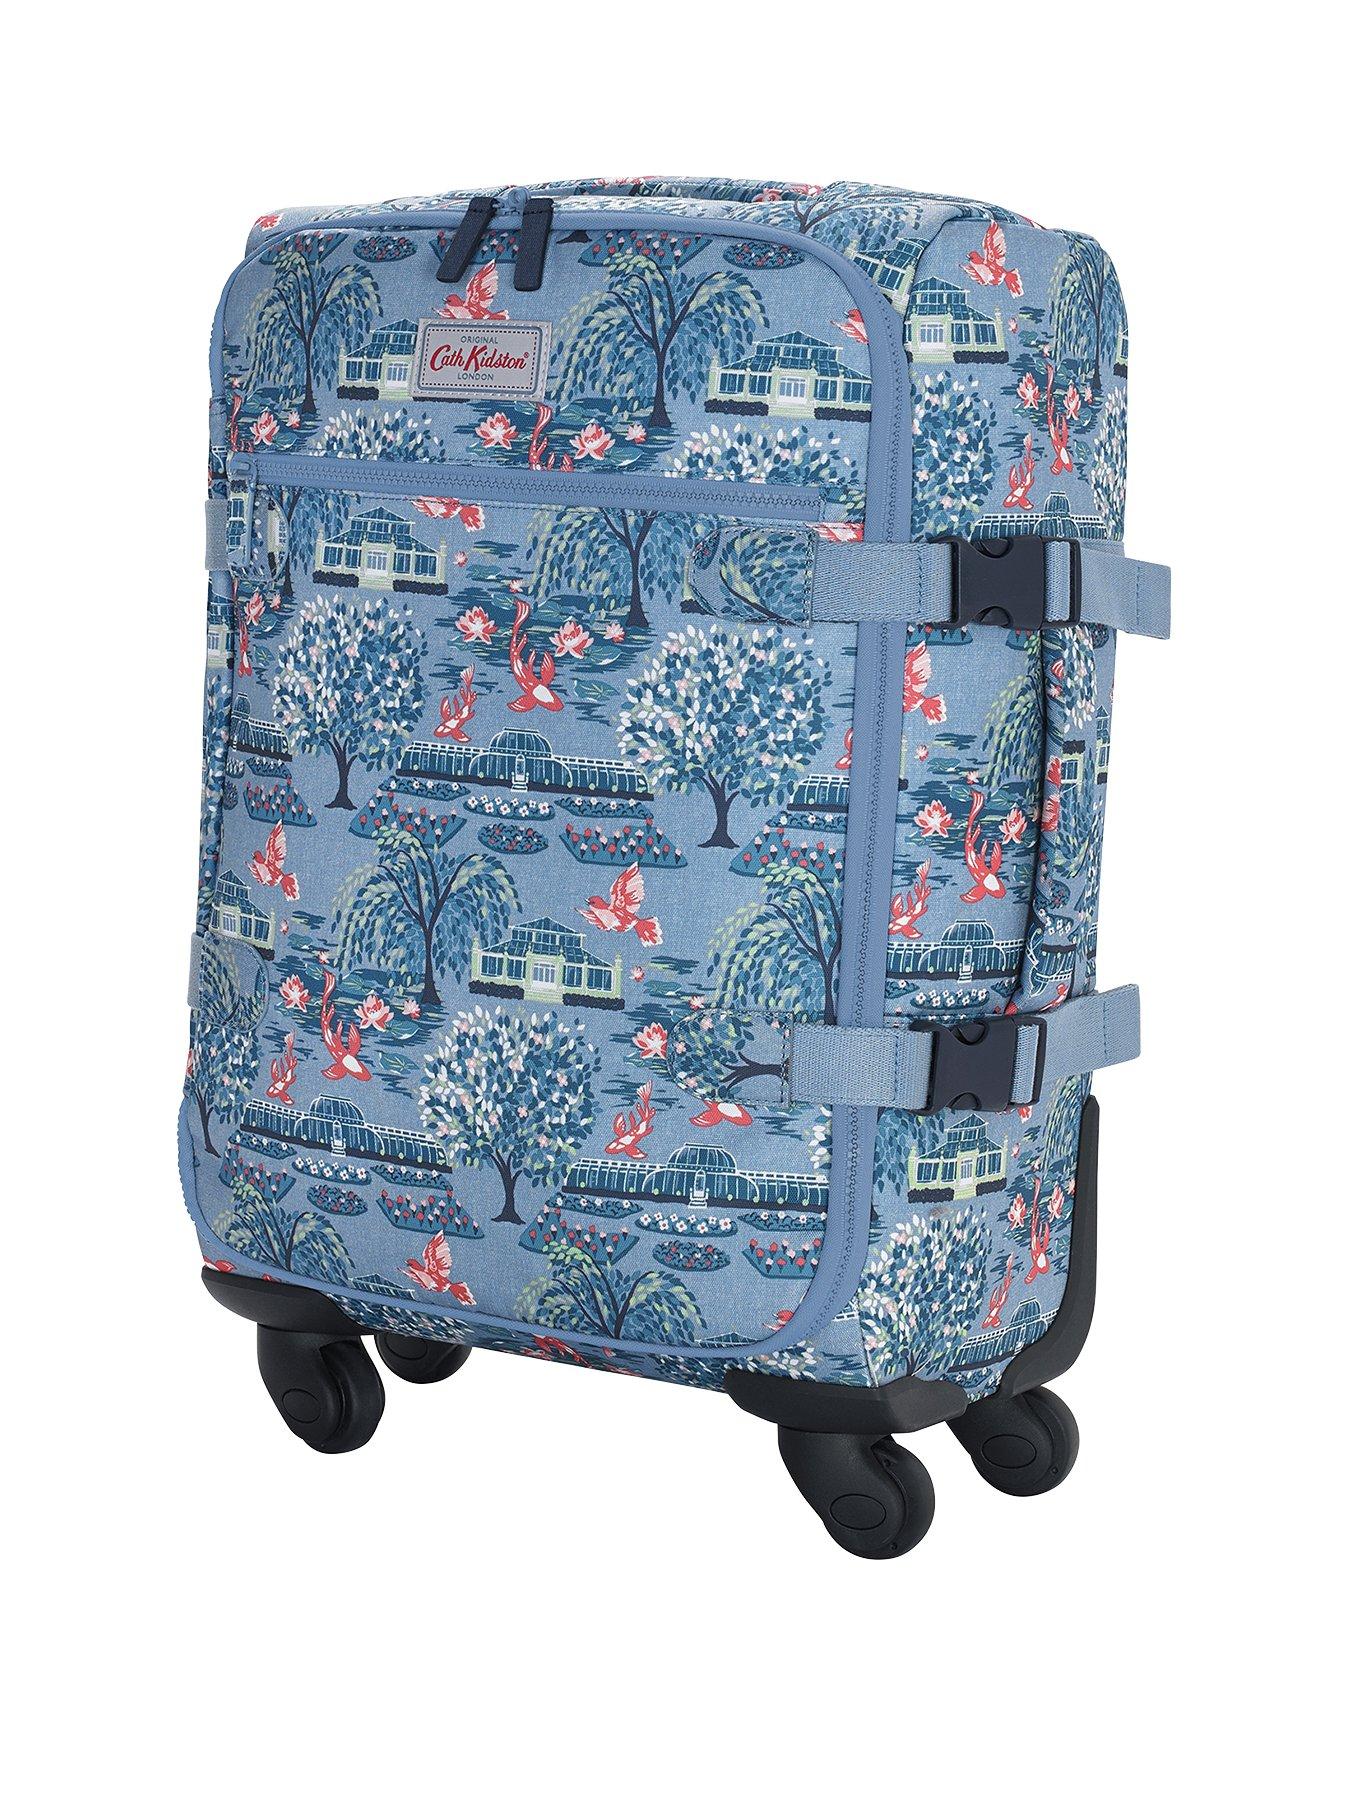 cath kidston luggage